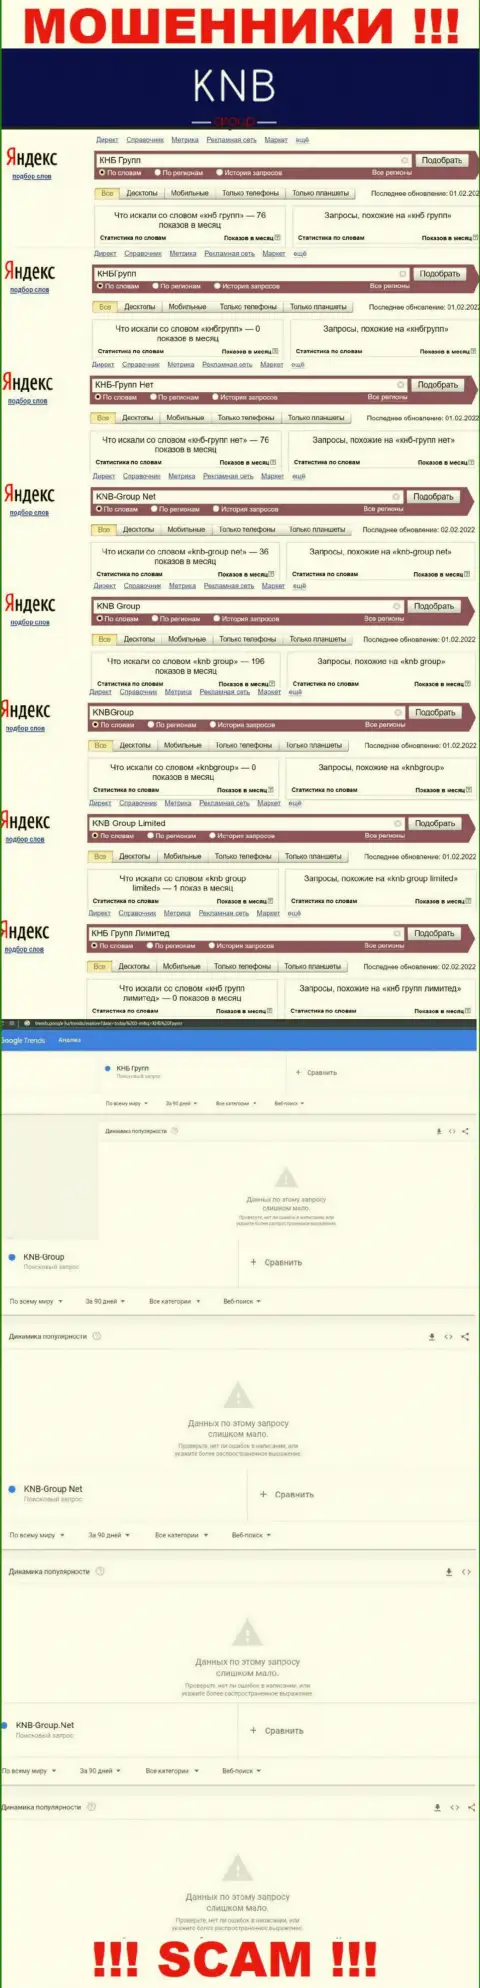 Скриншот статистических сведений онлайн-запросов по неправомерно действующей конторе KNBGroup